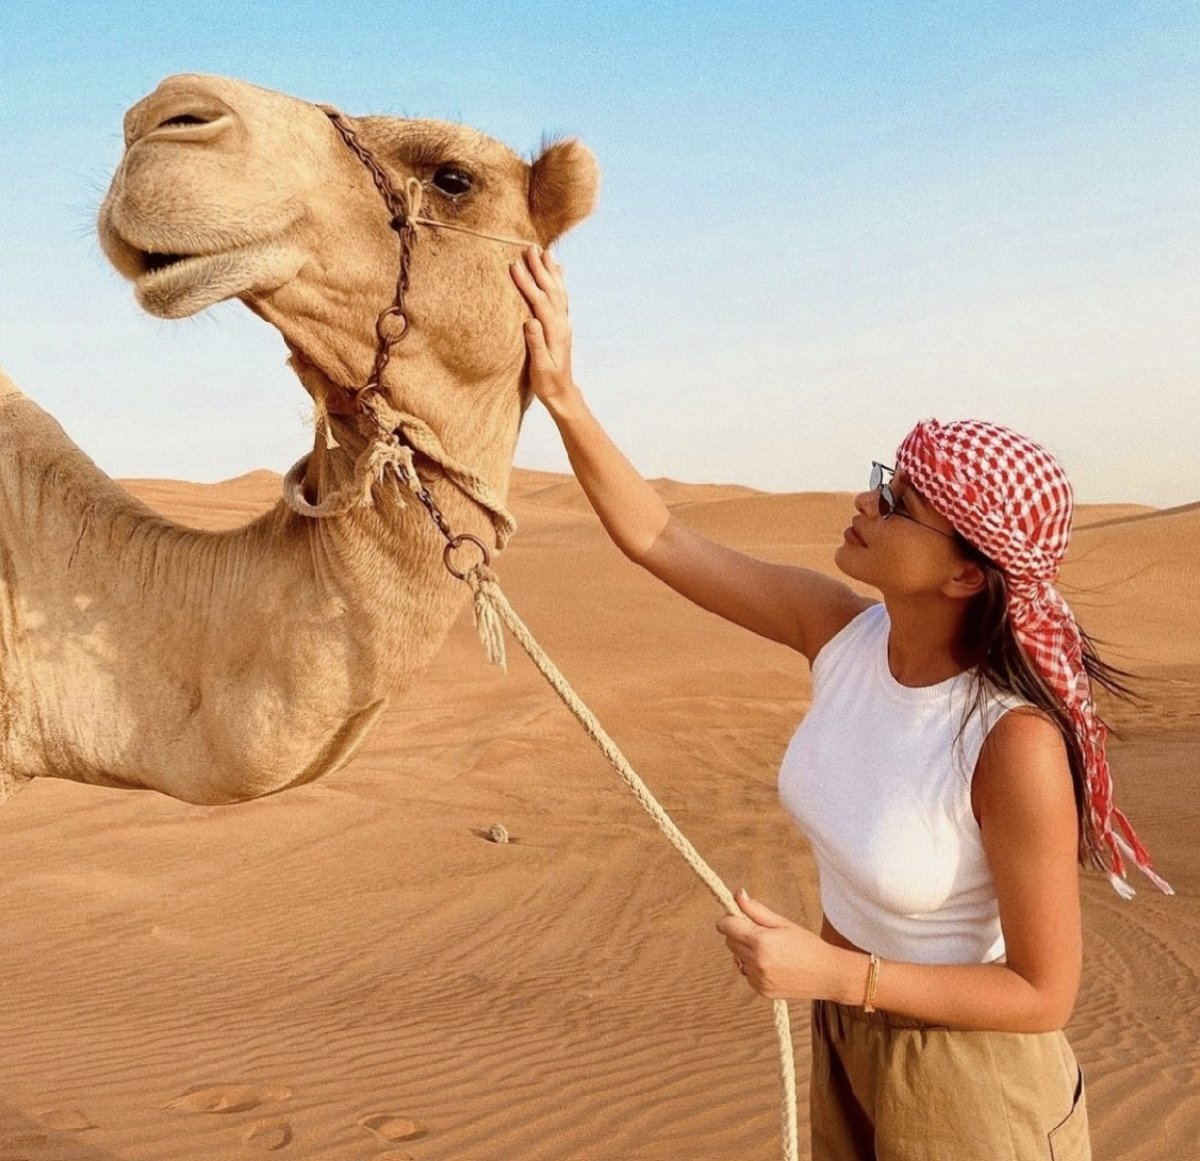 Сафари в пустыне Дубай